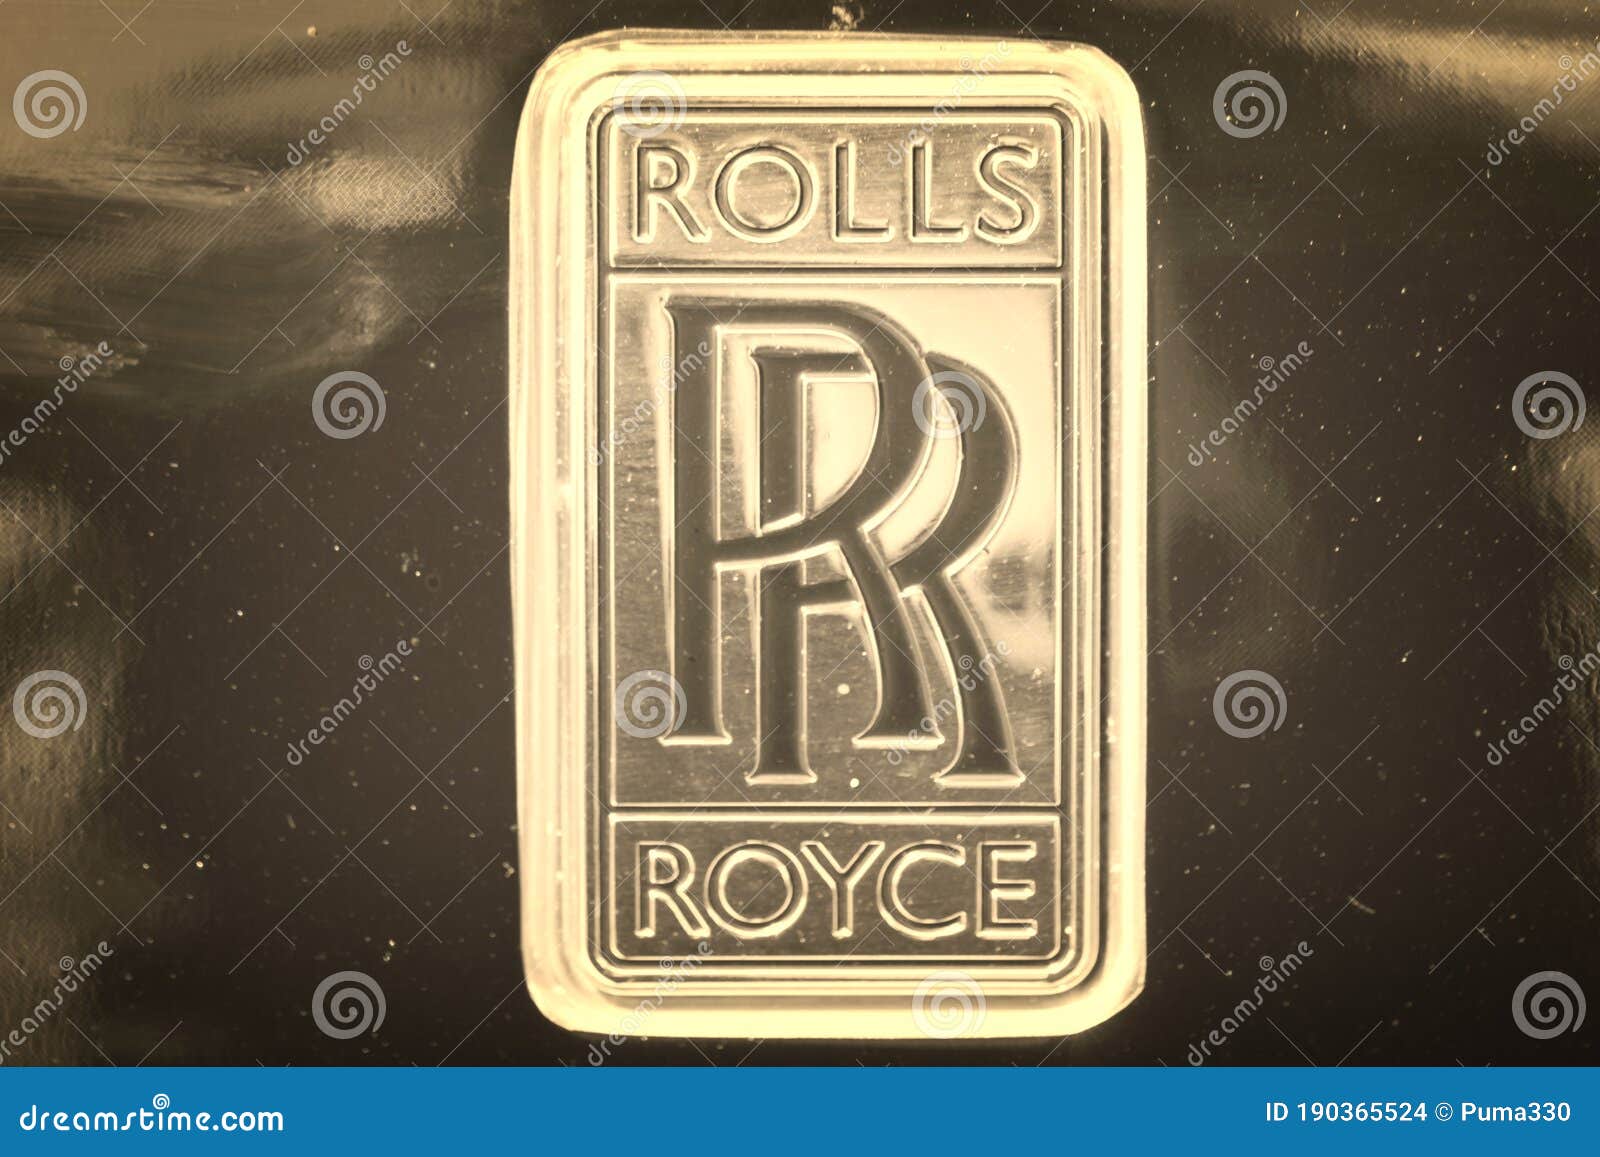 rolls royce logo hd wallpaper